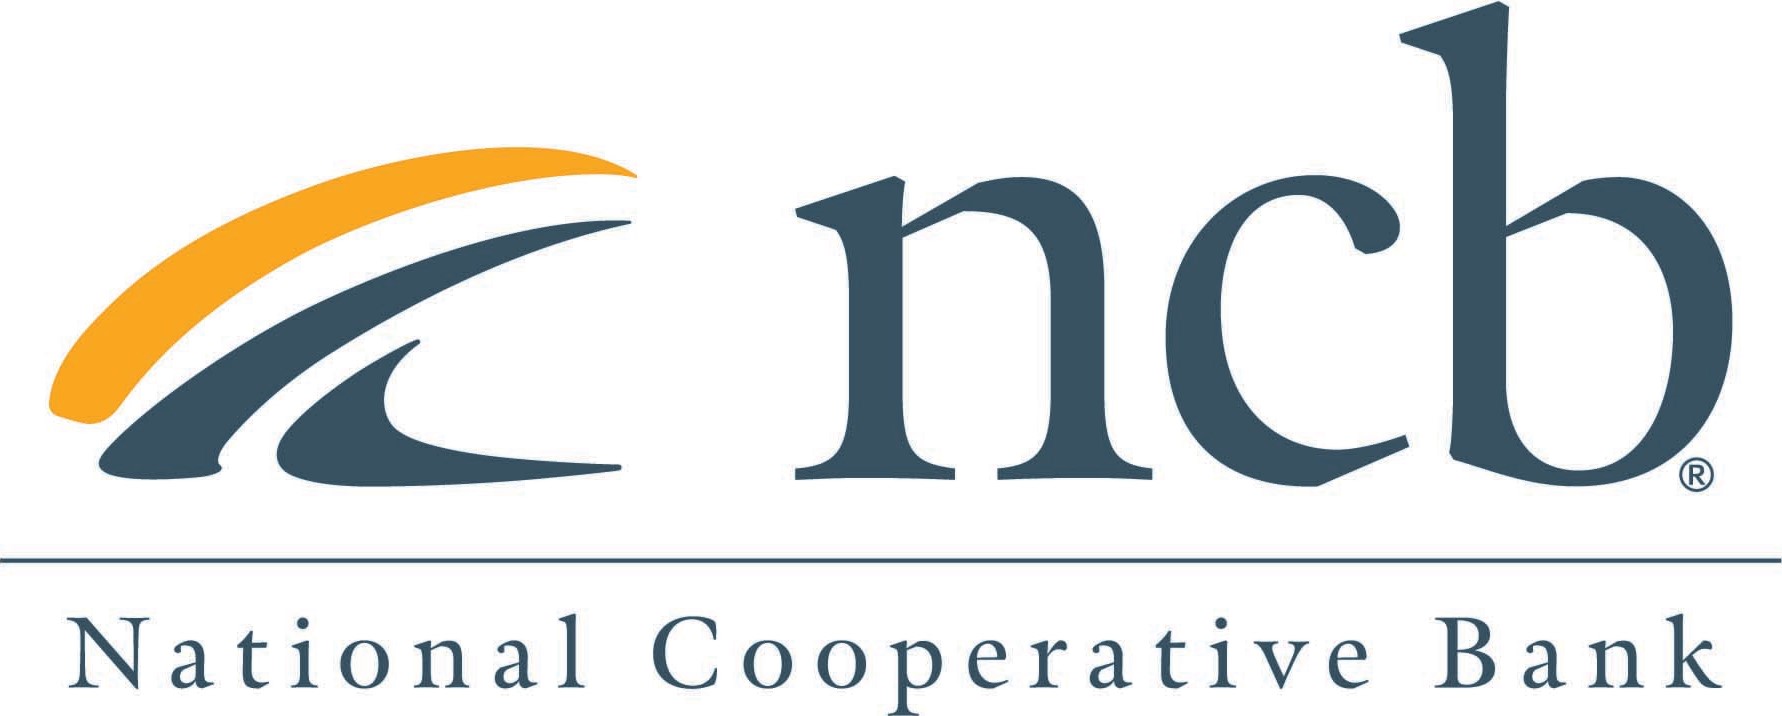 National Cooperative Bank (NCB) logo